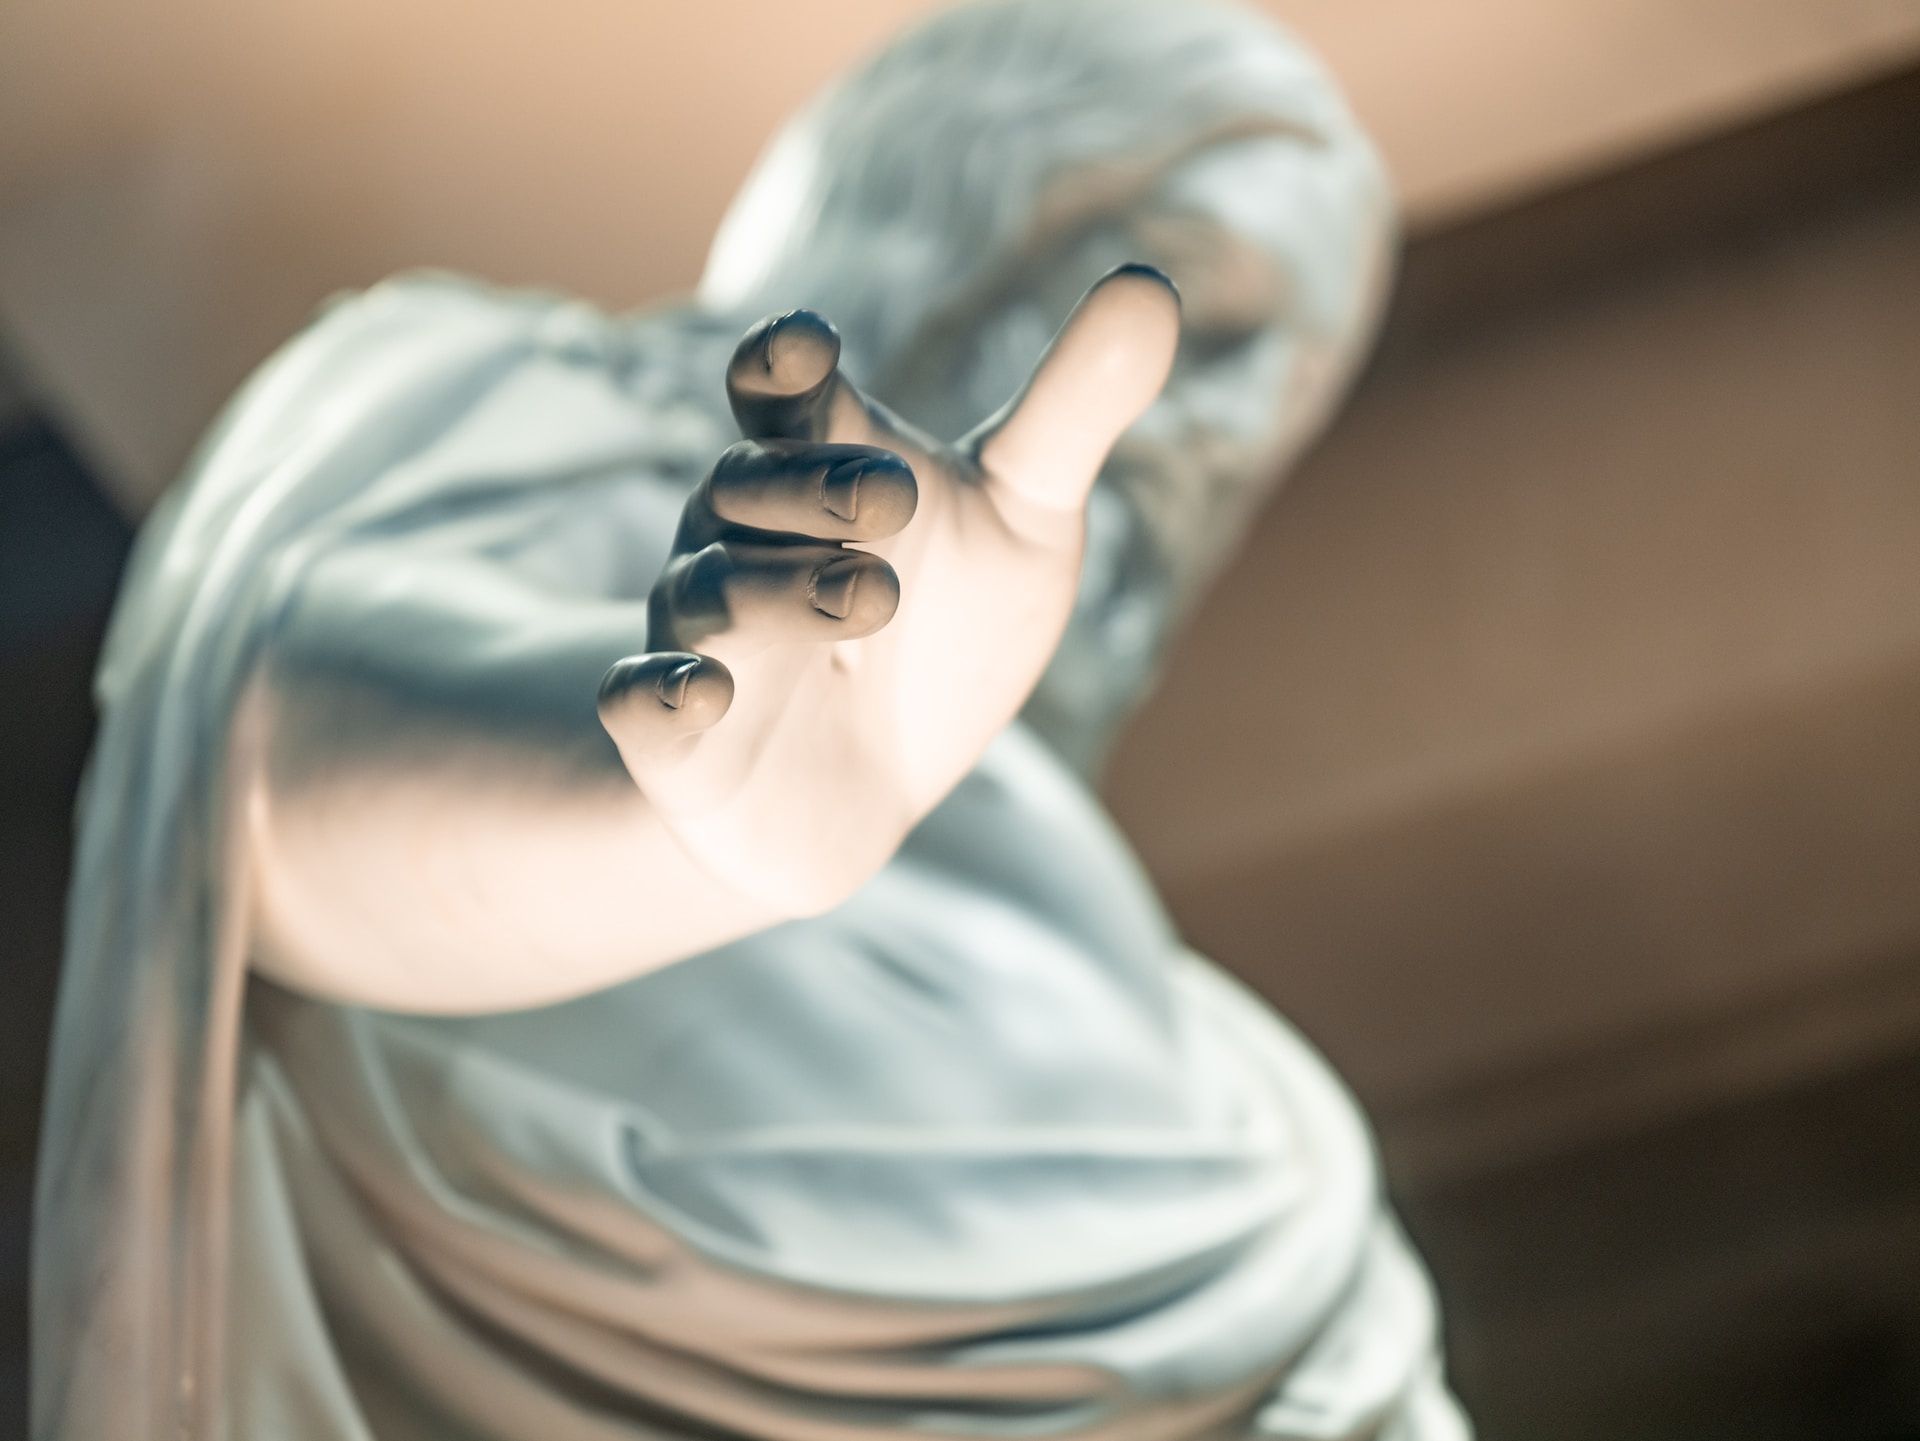 une statue imaginant Jésus, avec sa main tendue en gros plan - Photo by the blowup on https://unsplash.com/fr/photos/garcon-en-chemise-blanche-portant-des-lunettes-a-monture-noire-CuOZuiZDBWU